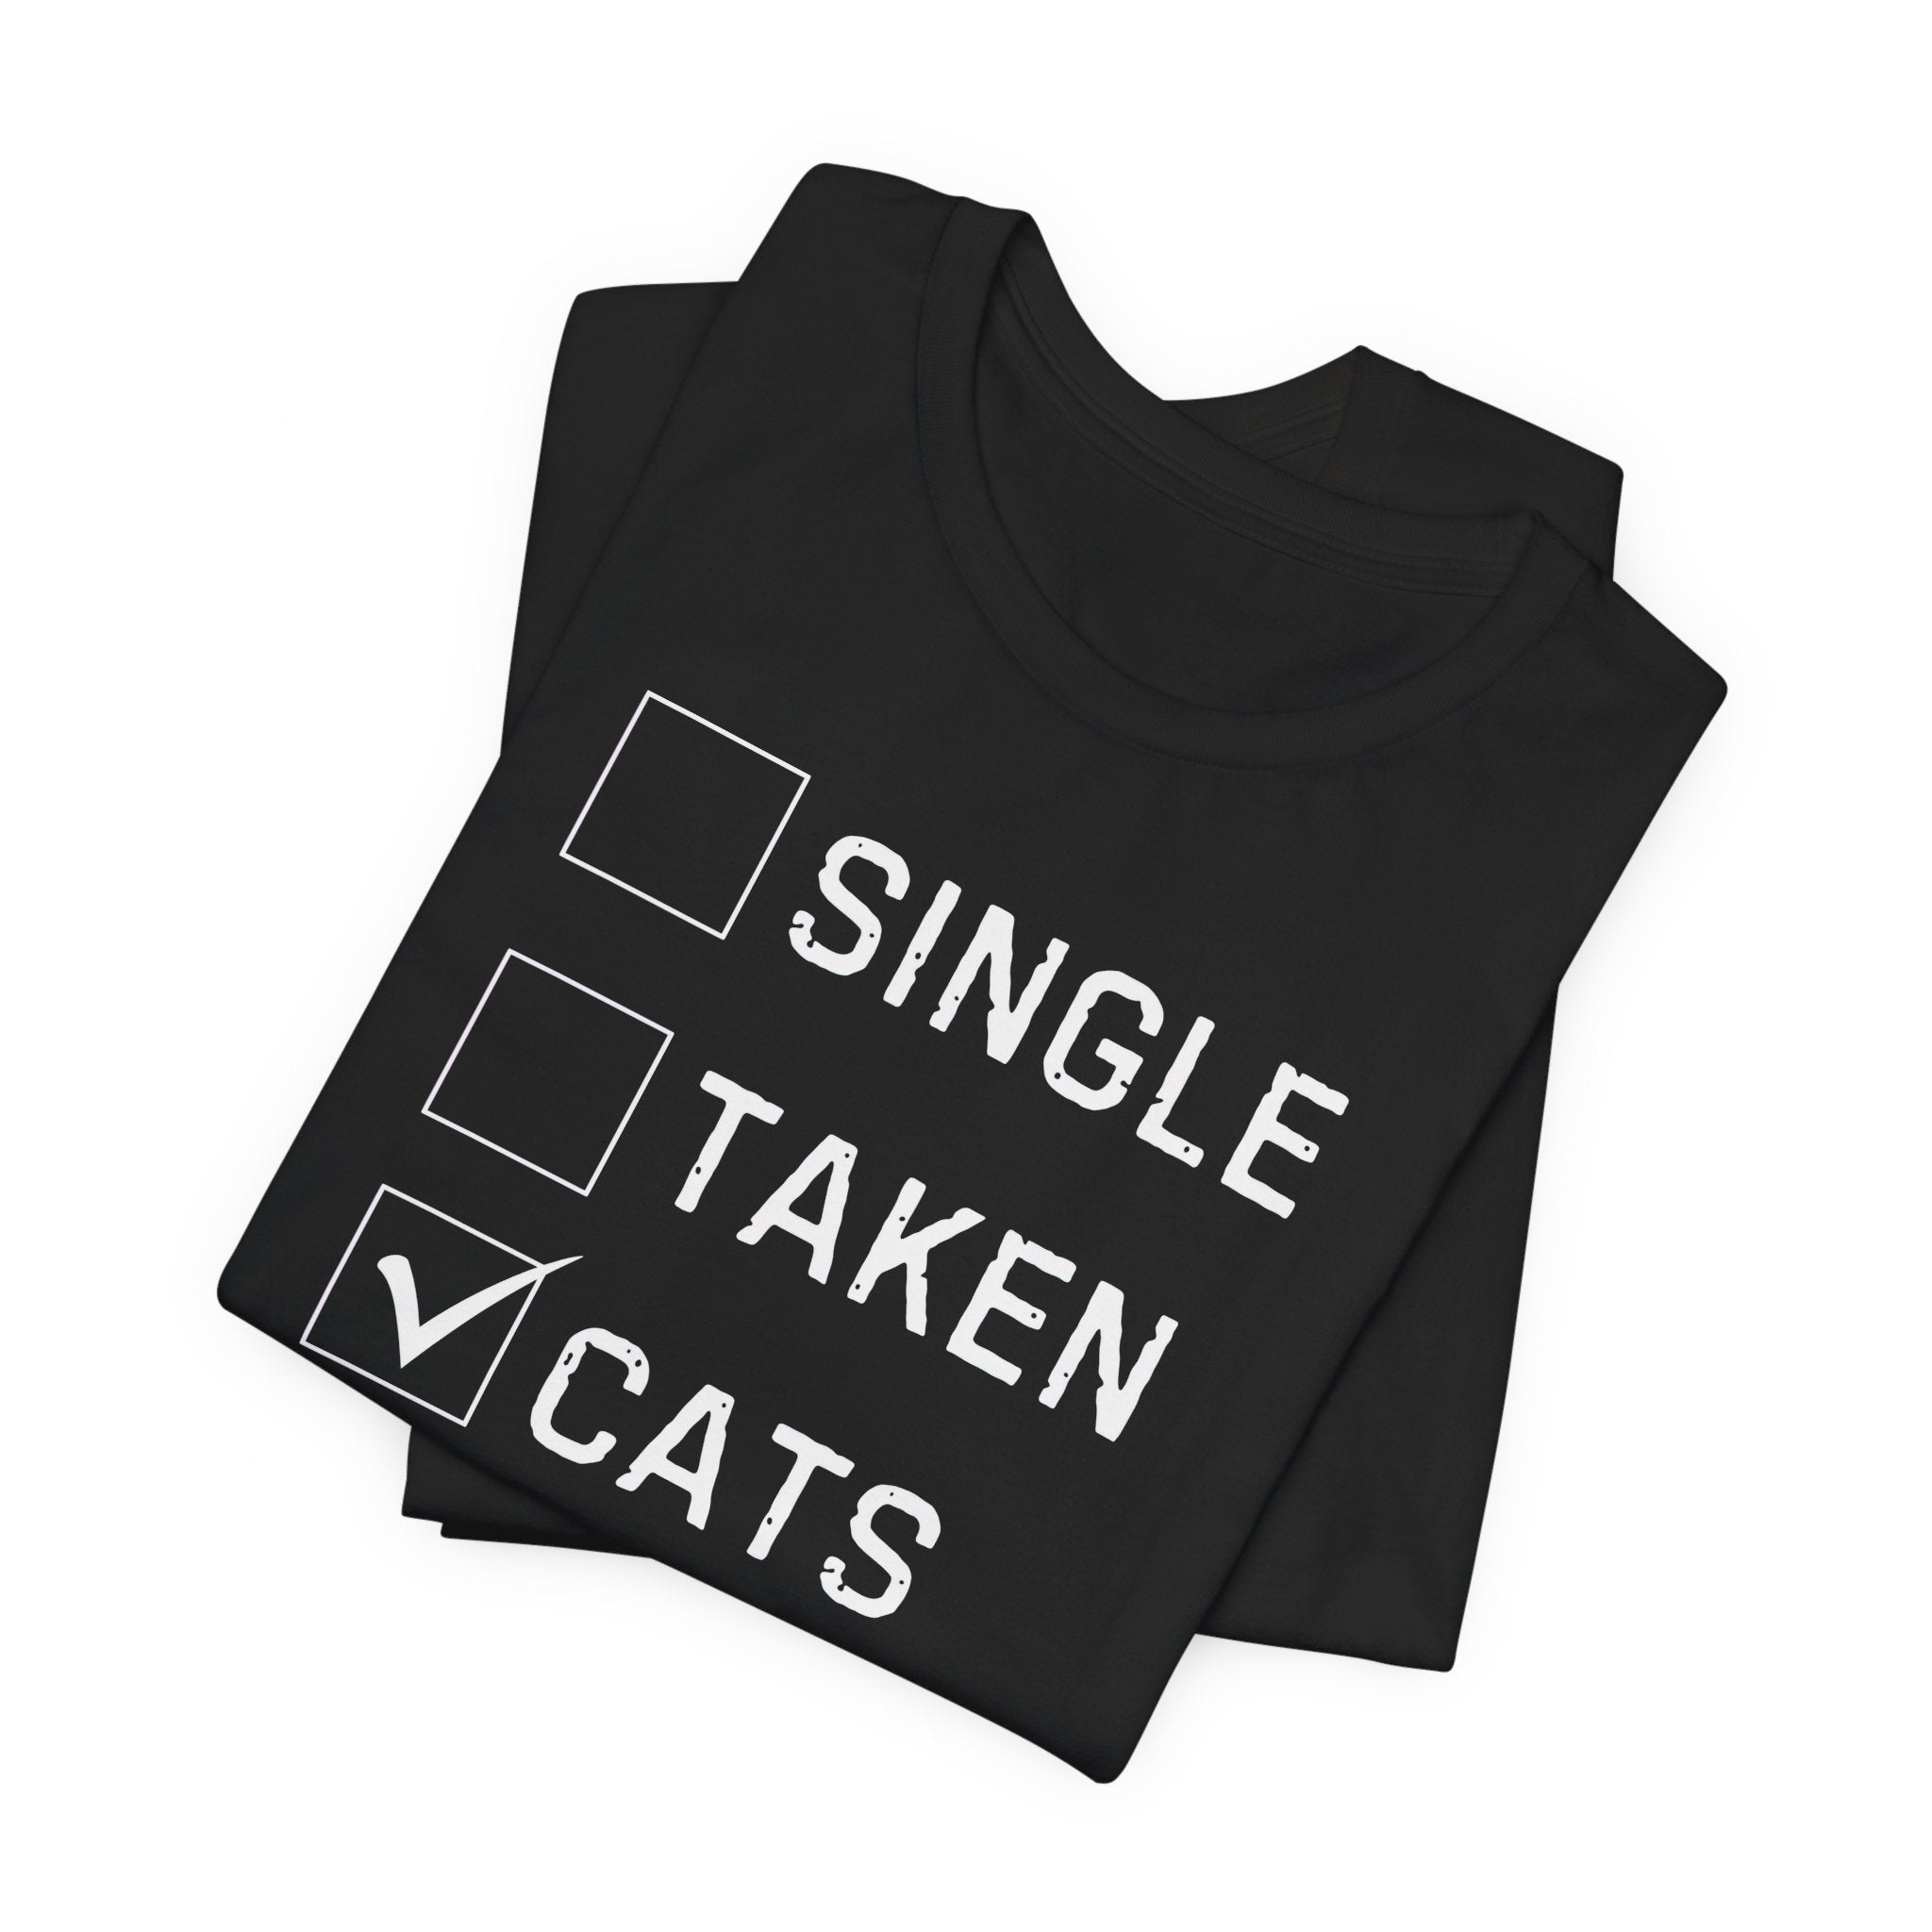 Single Taken Cats T-Shirt